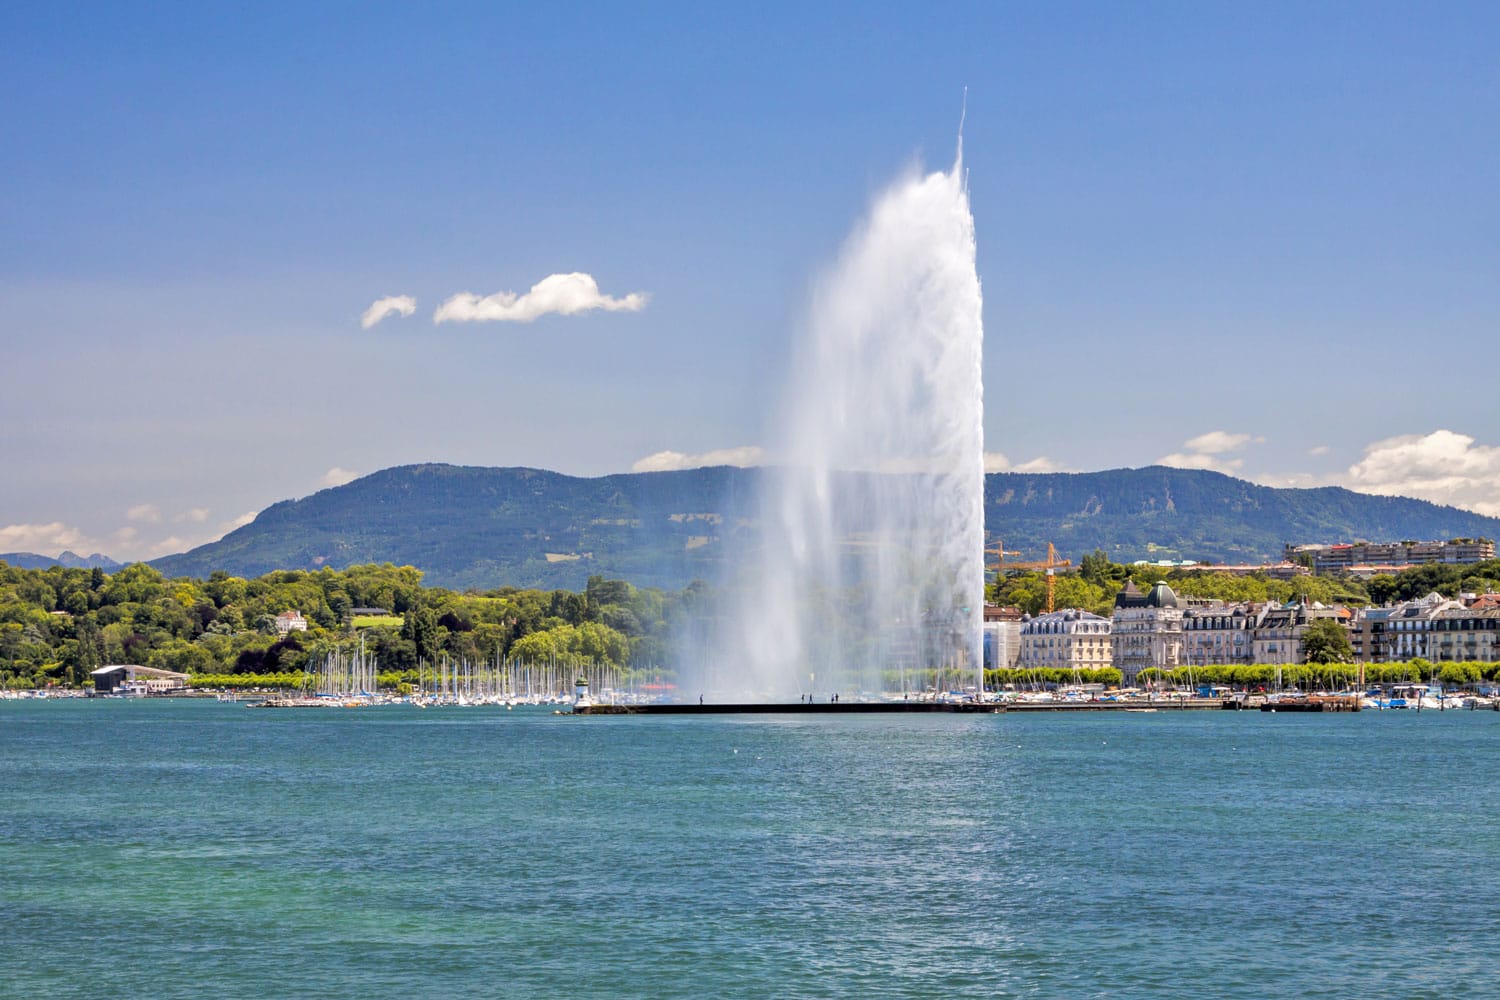 Πανόραμα της νότιας όχθης της λίμνης της Γενεύης και της διάσημης κρήνης jet d'eau (εκτόξευση νερού) στο καντόνι της Γενεύης, Ελβετία